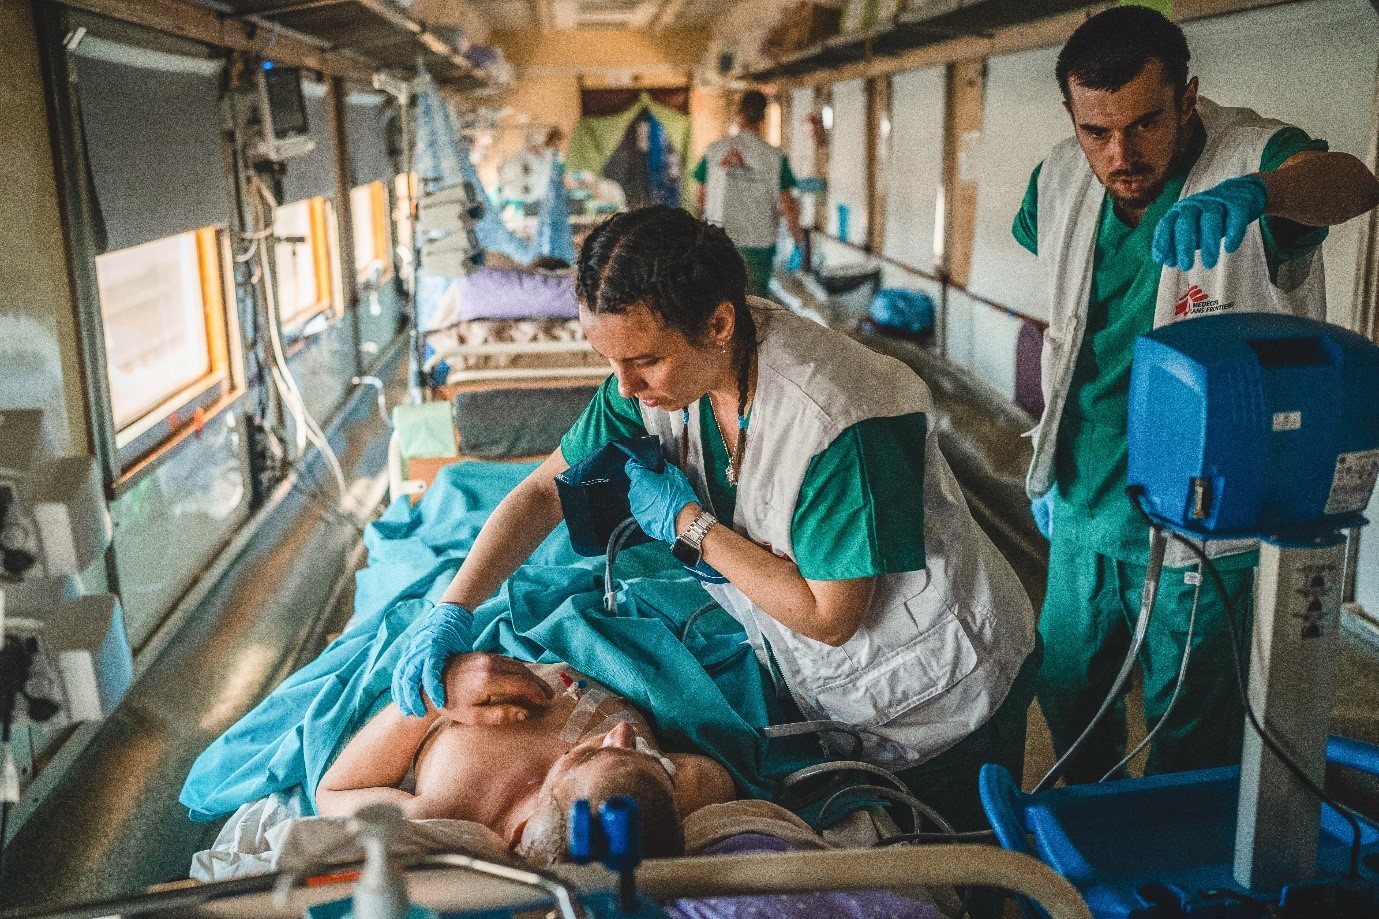 Doctors on Rails - AZG medische trein in Oekraïne - Het medisch team in de ’intensive care unit‘ (ICU) van de medische trein van AZG controleert en stabiliseert een zwaargewonde patiënt tijdens een reis van Pokrovsk in Oost-Oekraïne naar Lviv in West-Oekraïne. De reis duurt ongeveer 20 uur - 20/05/2022 - © Andrii Ovod